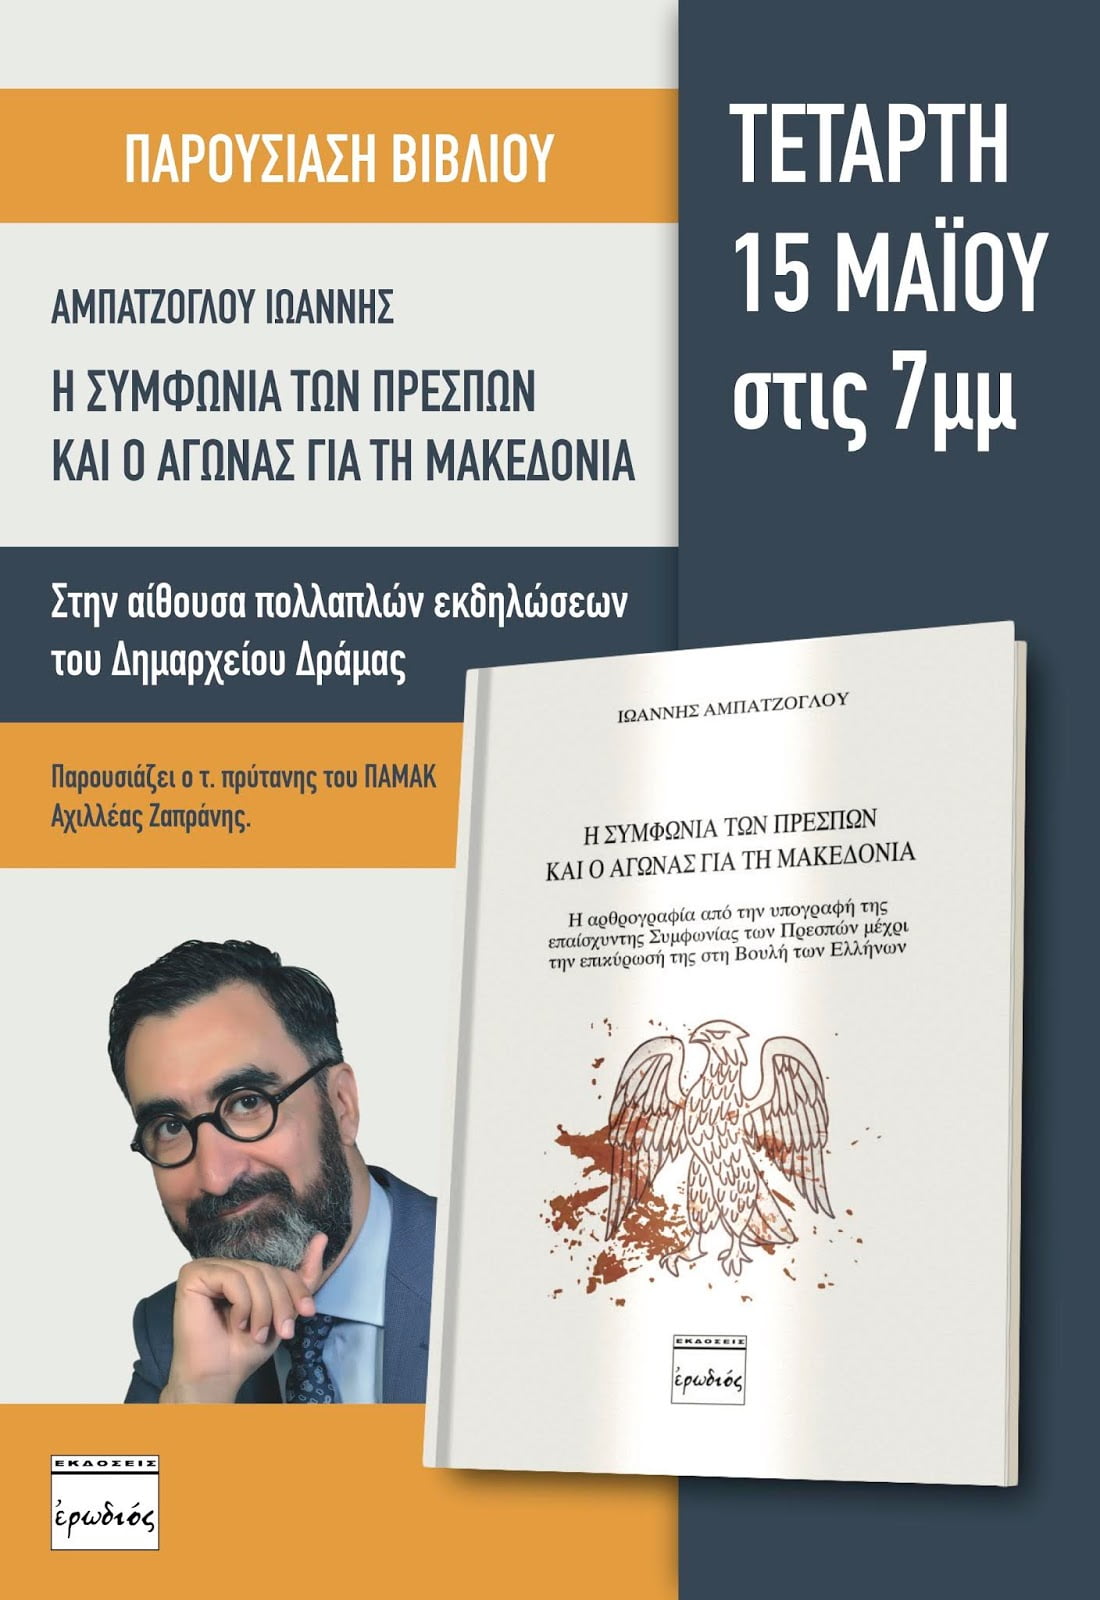 Παρουσίαση στη Δράμα του βιβλίου του Γιάννη Αμπατζόγλου "Η Συμφωνία των Πρεσπών και ο Αγώνας για τη Μακεδονία"